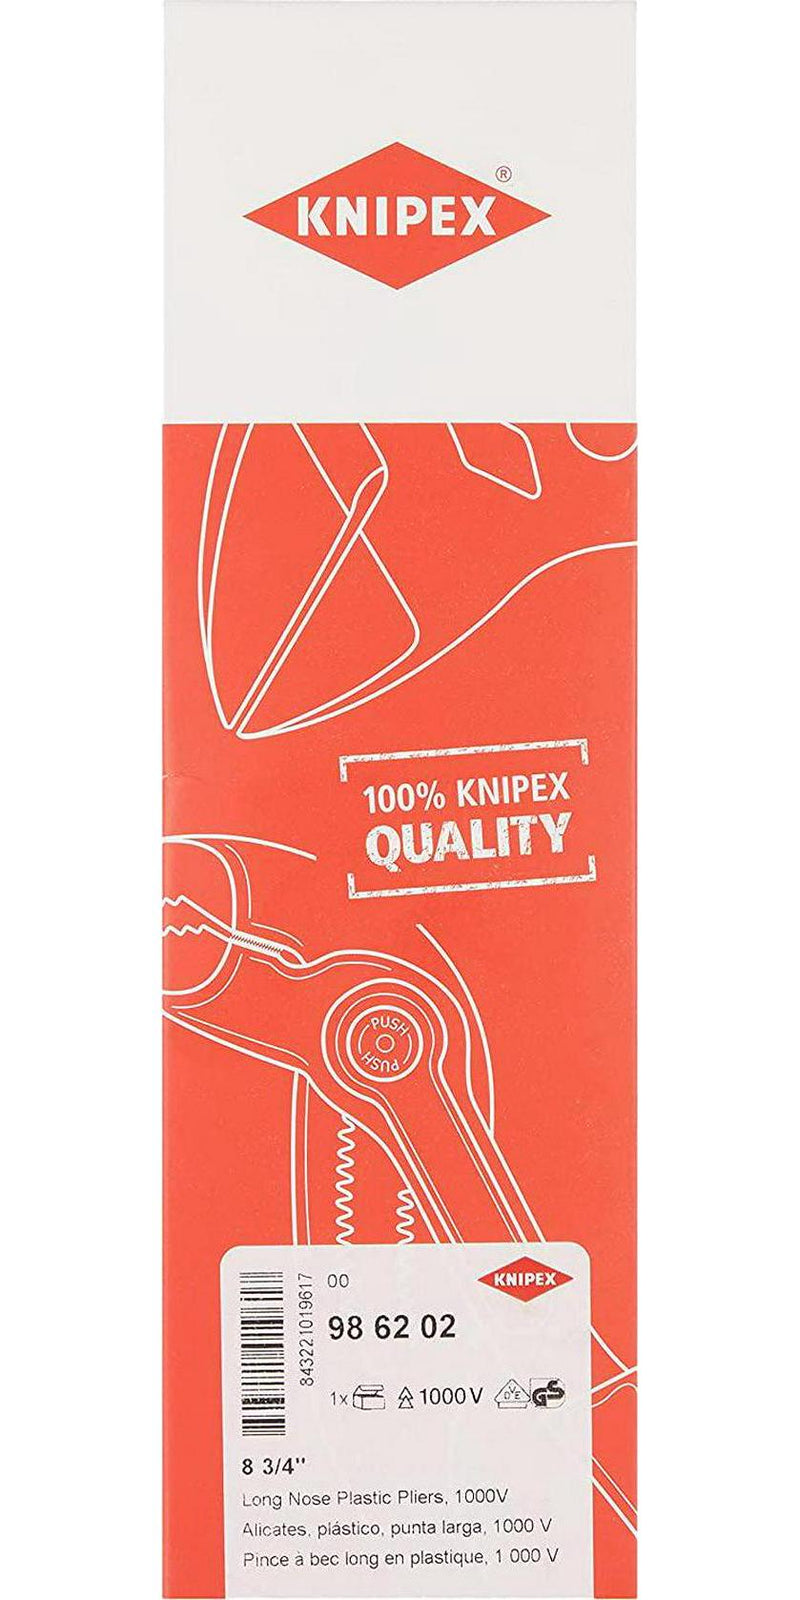  Knipex Tools, 9K 00 80 94, set de 4 alicates: de punta